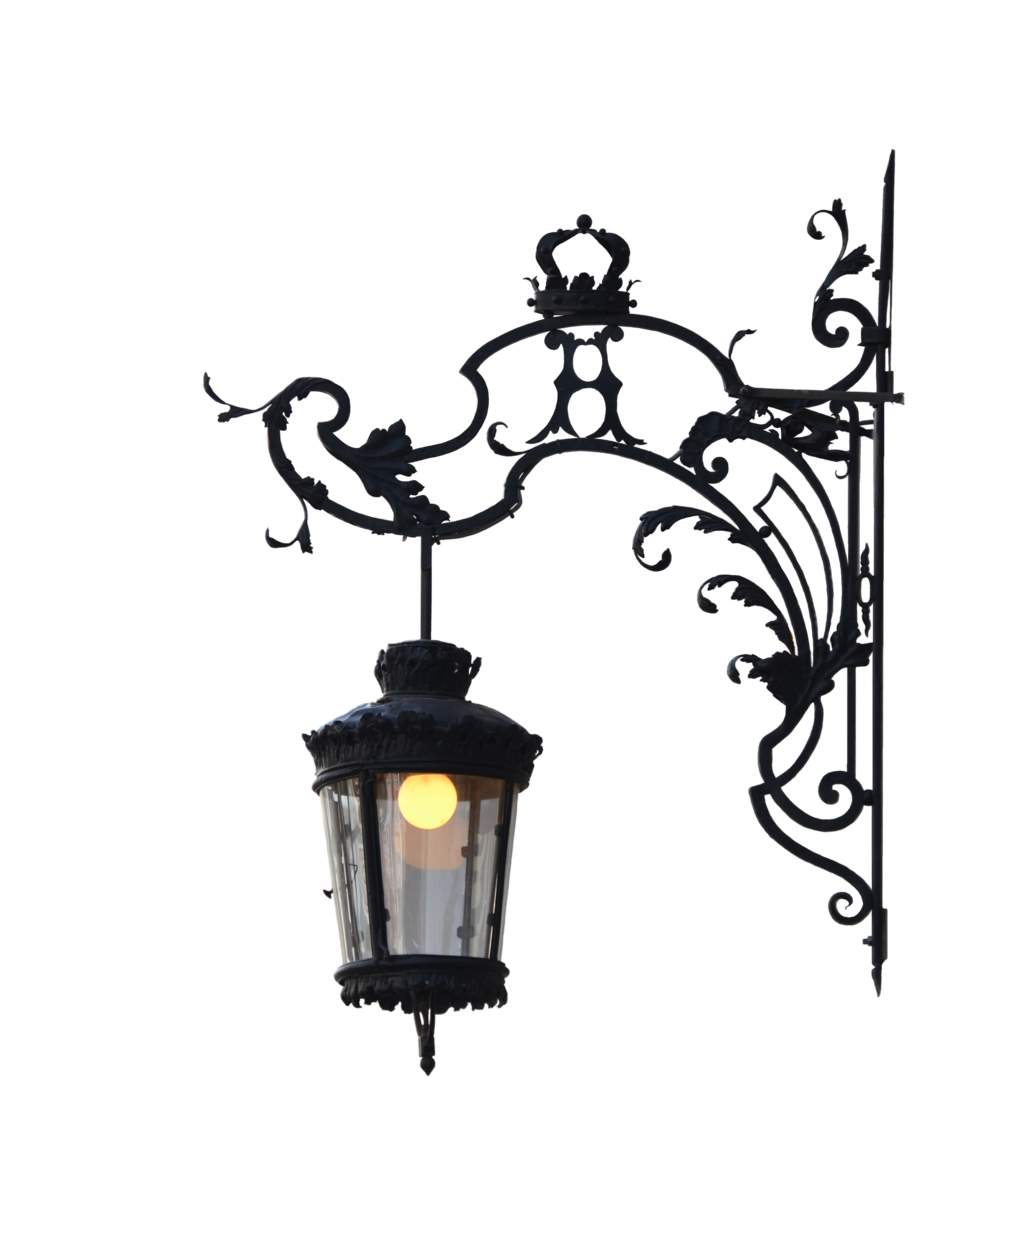 Lampe de lumière décorative PNG Image de haute qualité